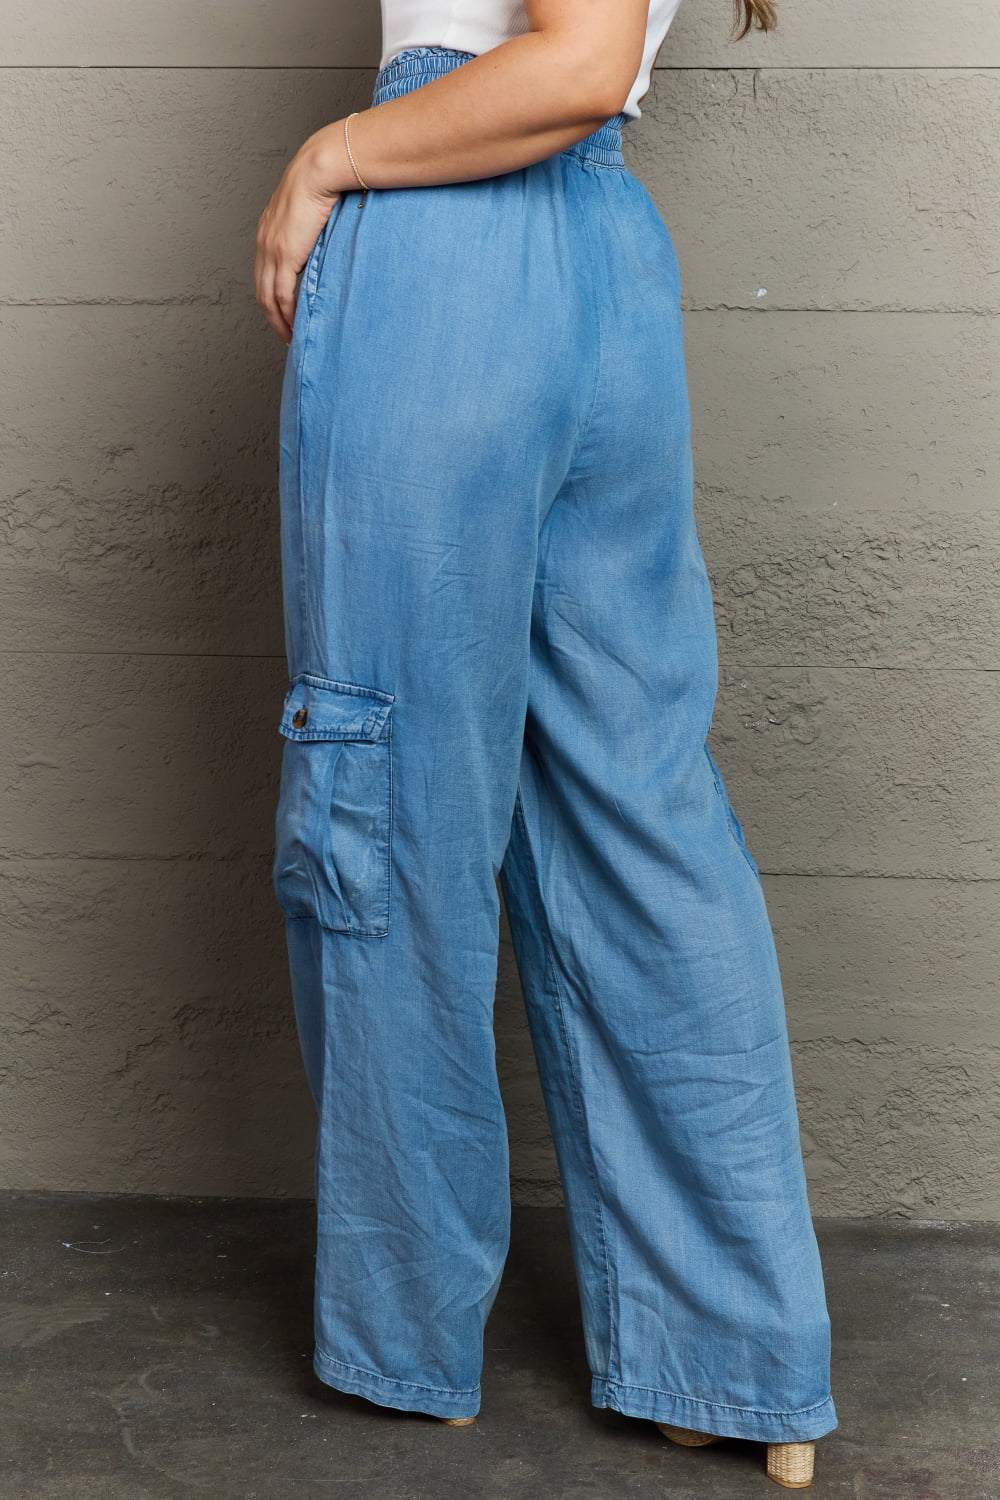 Buy Women's High Waist Cargo Jeans Flap Pocket Baggy Cargo Pants Y2K Wide  Leg Denim Jeans Y2K Streetwear Pants., Black, M at Amazon.in